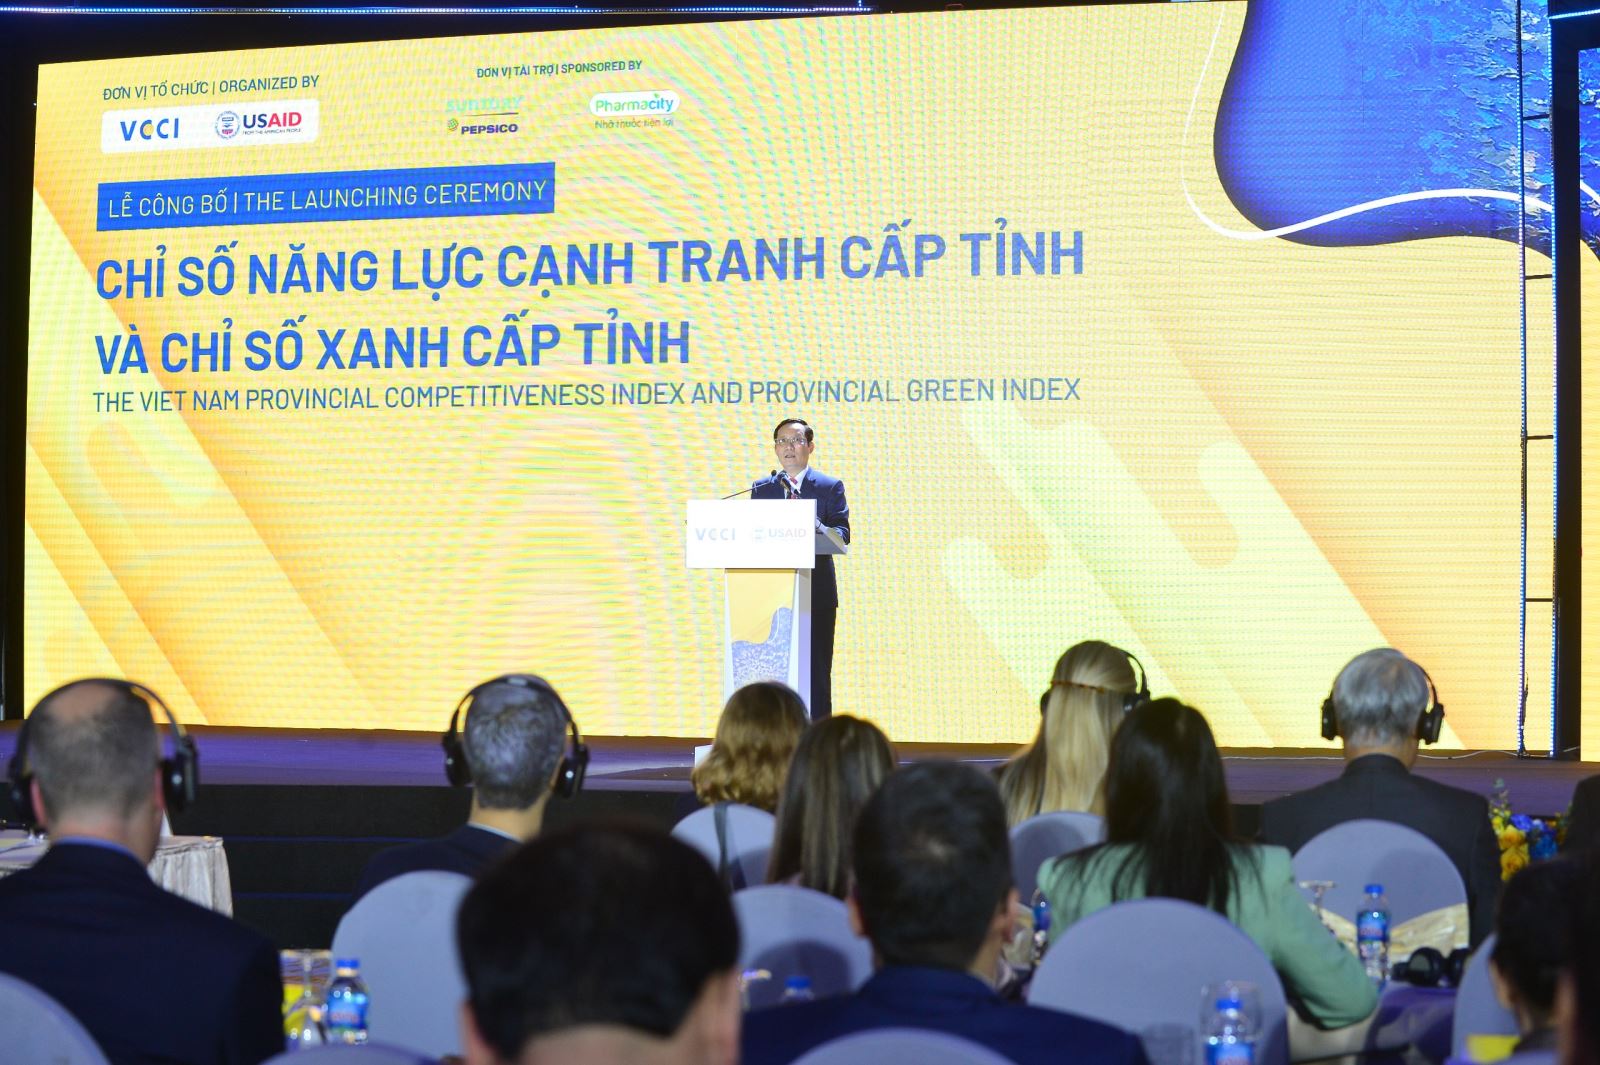 Ông Phạm Tấn Công, Chủ tịch Liên đoàn Thương mại và Công nghiệp Việt Nam phát biểu tại lễ công bố.